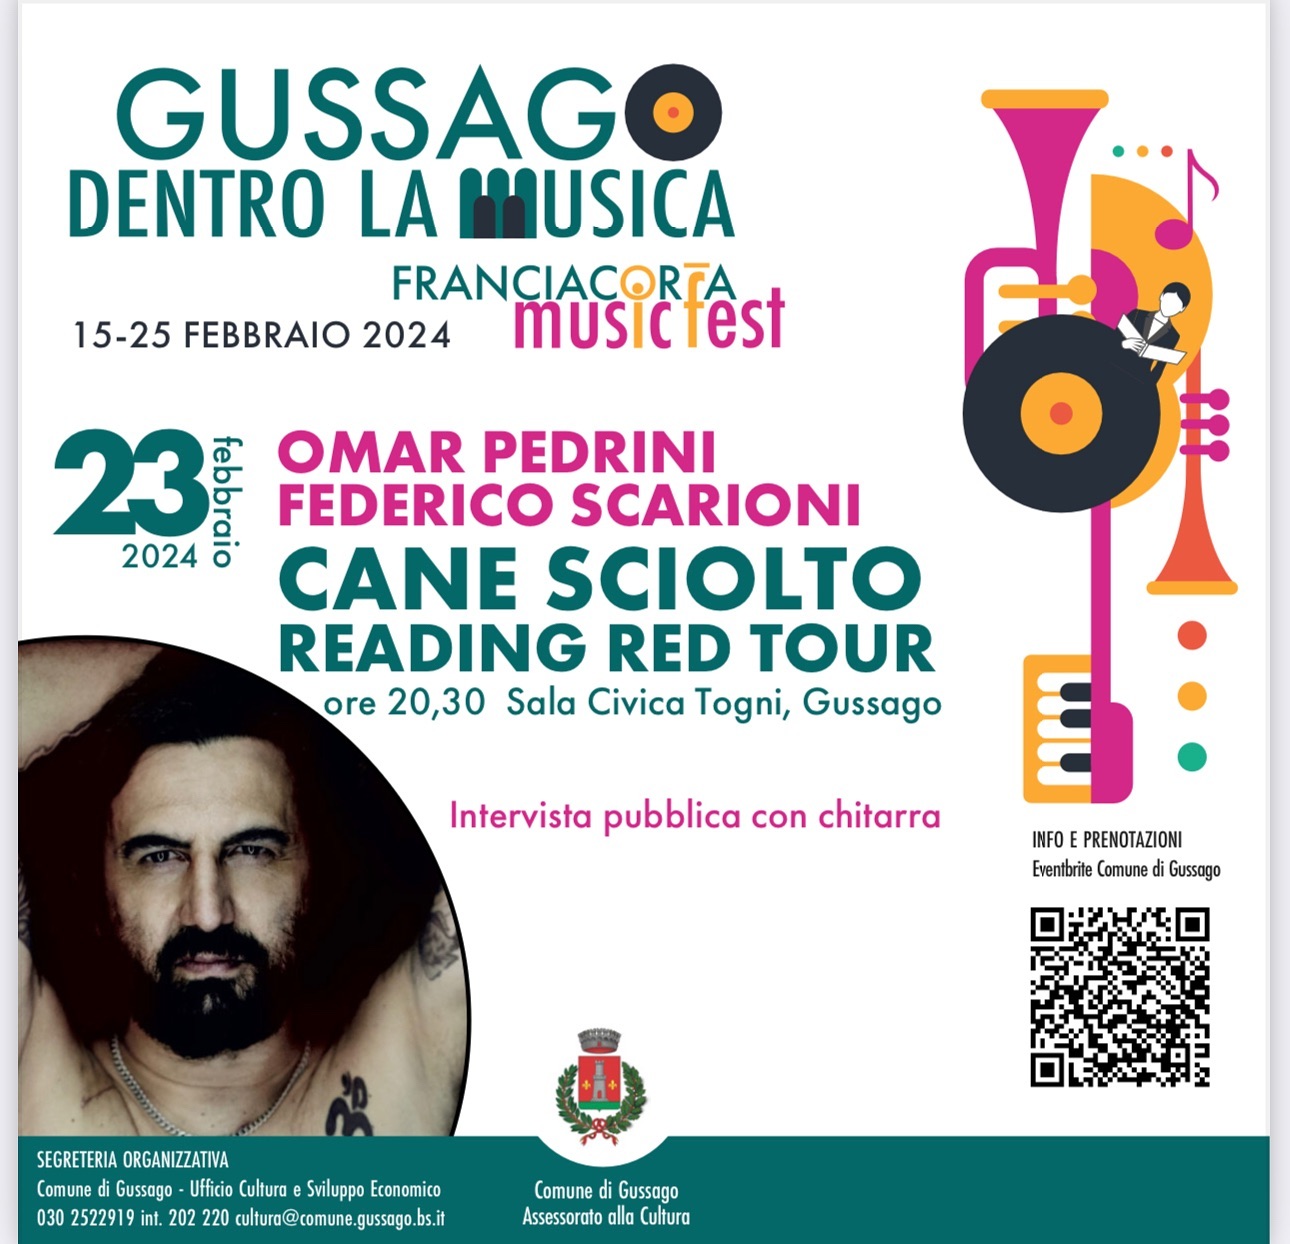 Franciacorta Music Fest - "Cane sciolto reading red tour" con Omar Pedrini e Federico Scarioni